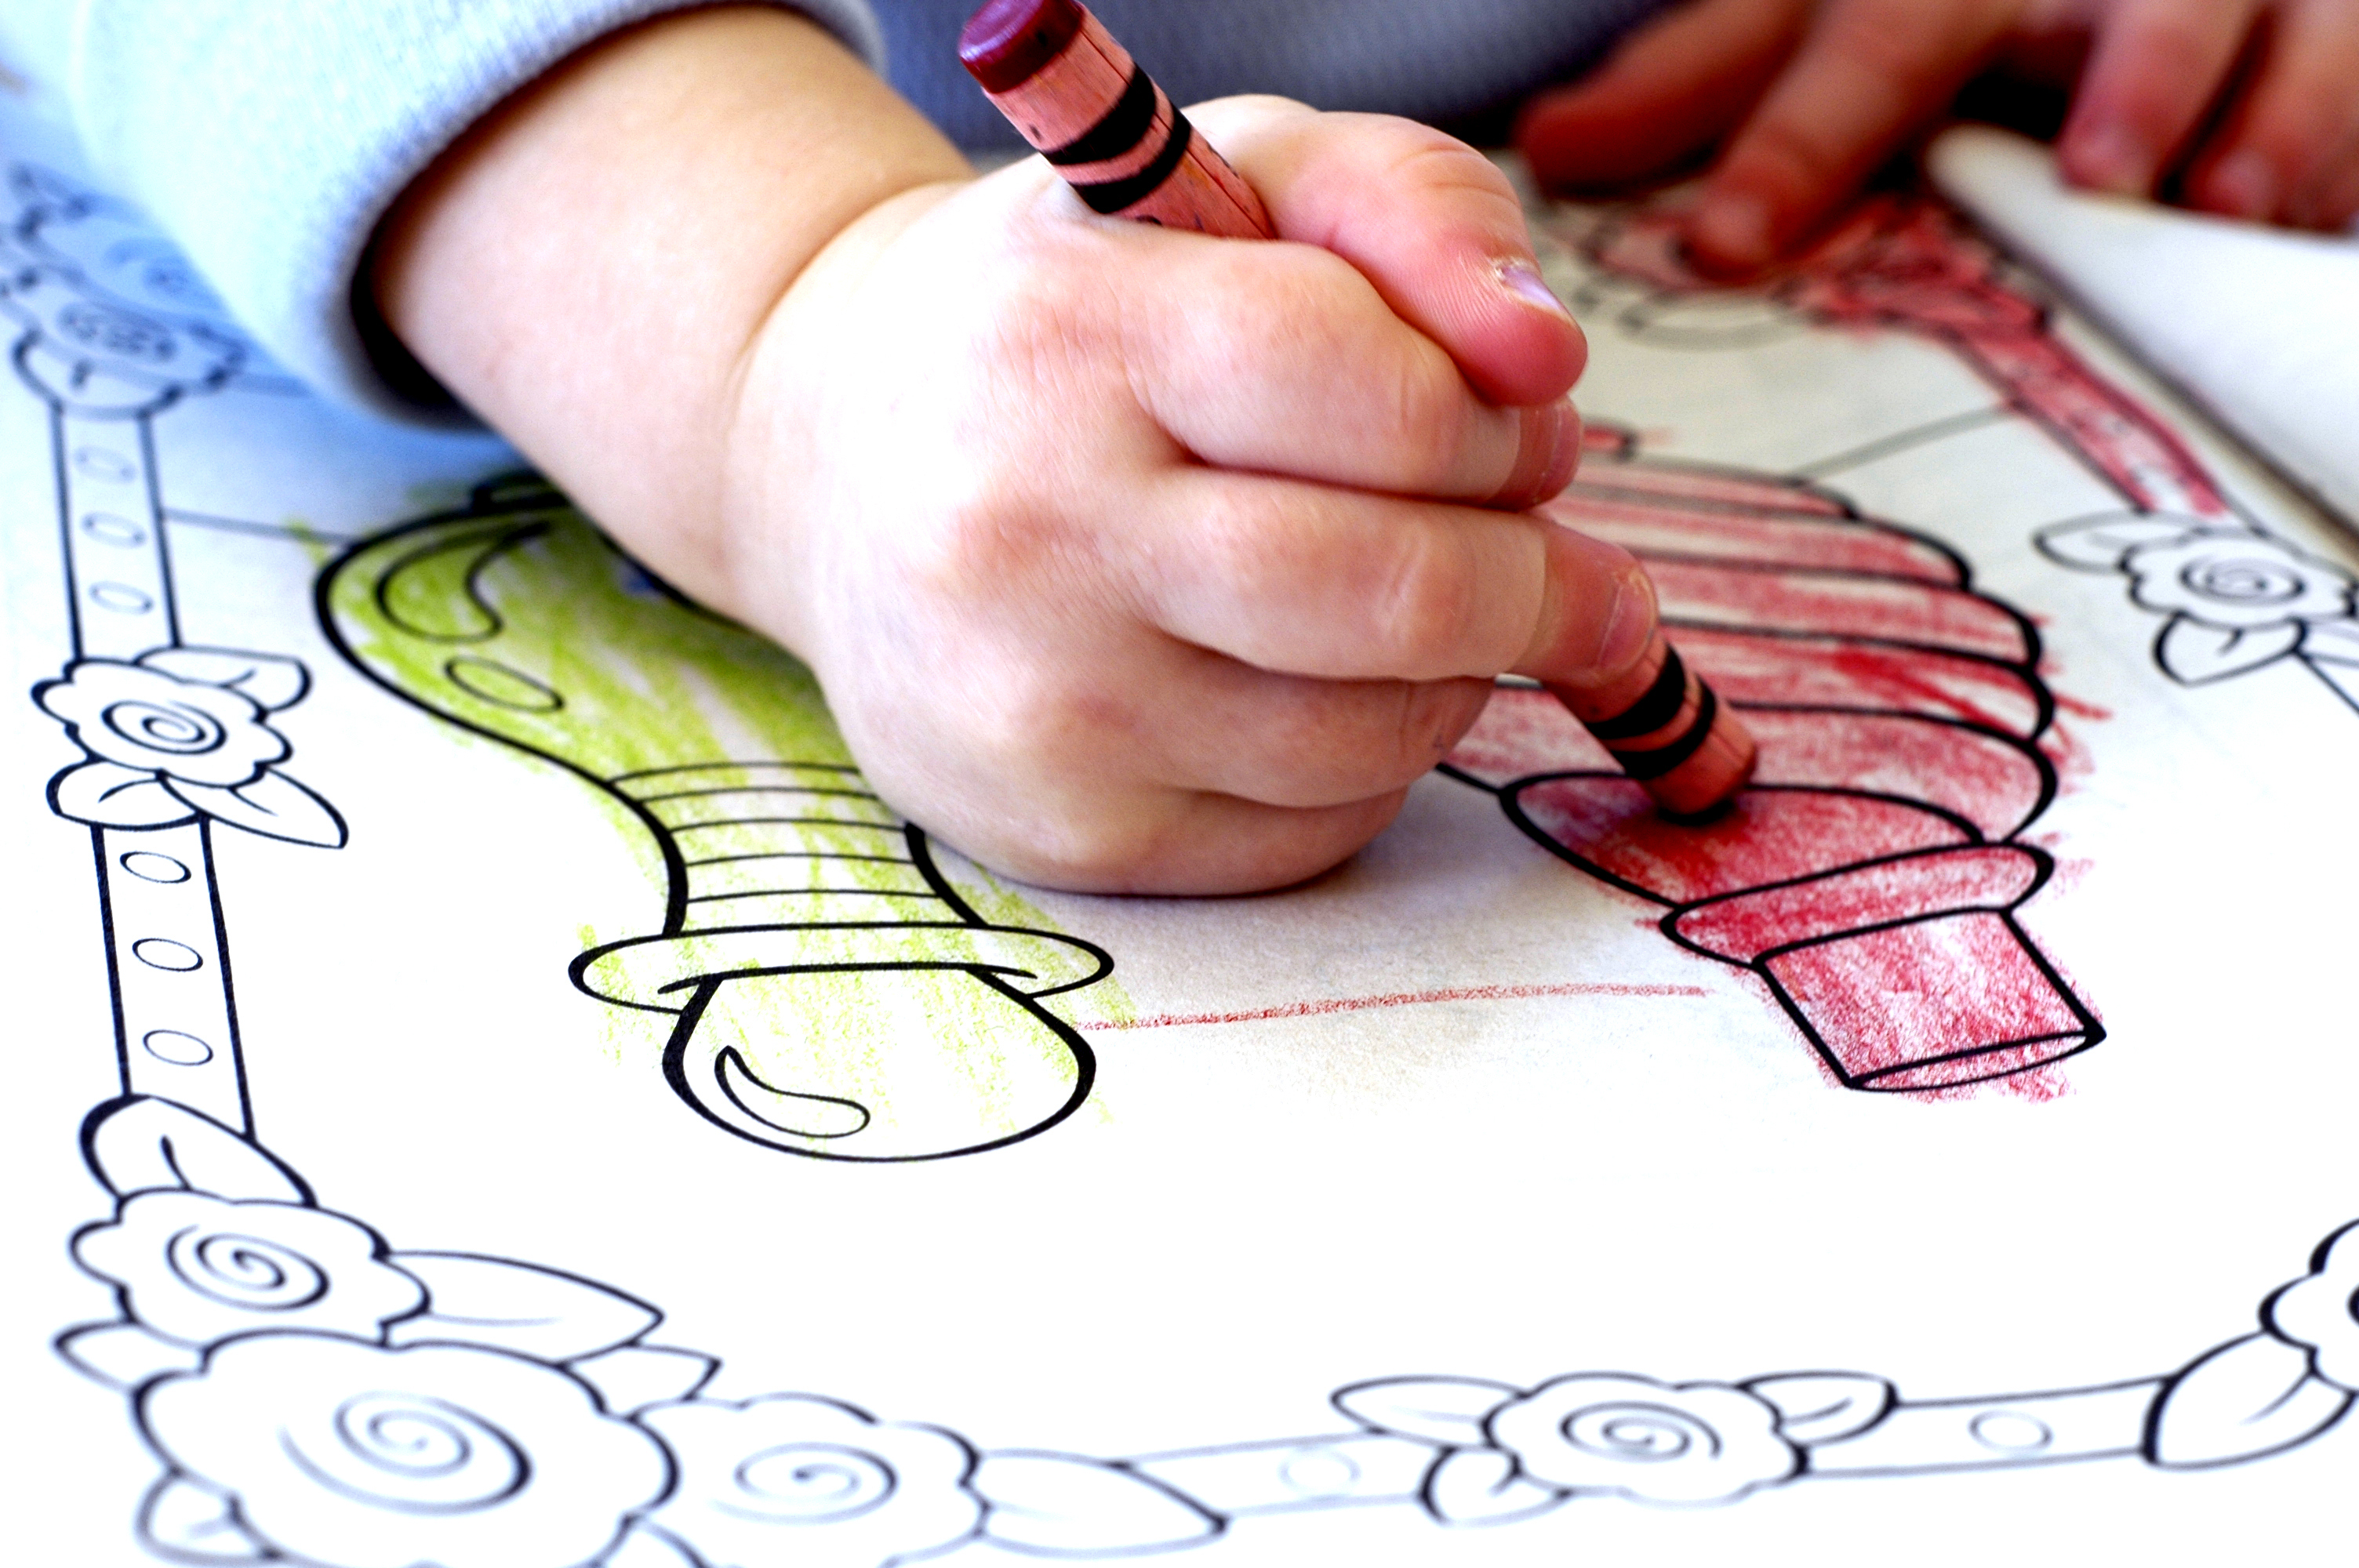 430円 安全 恐竜の塗り絵 Coloring Book for Kids: 赤ちゃん恐竜 4~8歳の 子どもの ための 子供向けのアクティビティと塗り絵 塗り